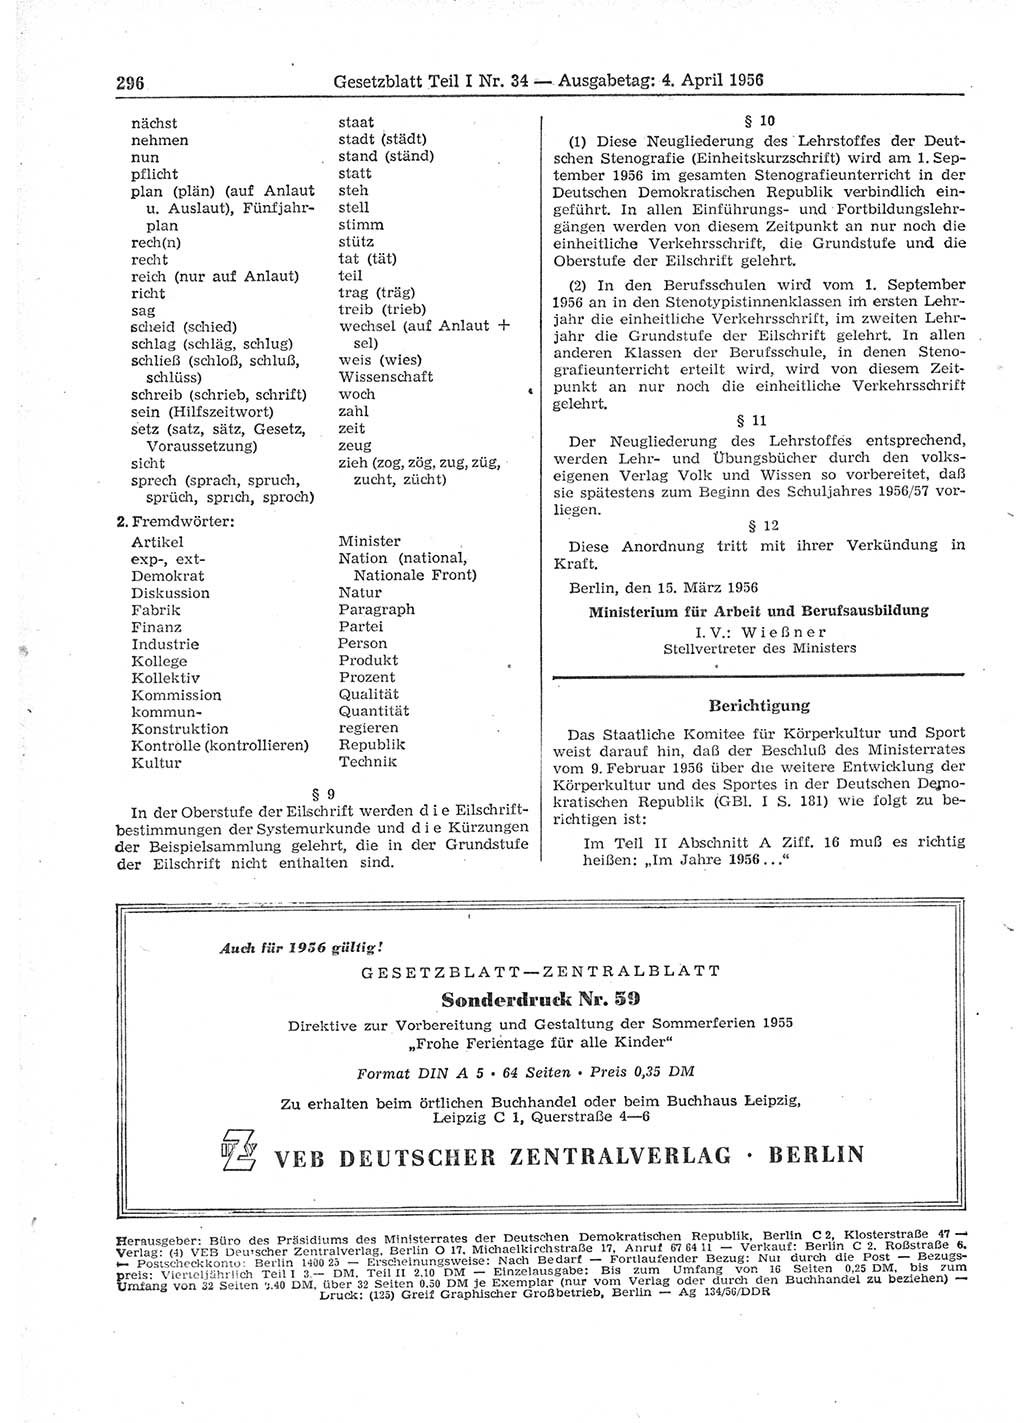 Gesetzblatt (GBl.) der Deutschen Demokratischen Republik (DDR) Teil Ⅰ 1956, Seite 296 (GBl. DDR Ⅰ 1956, S. 296)